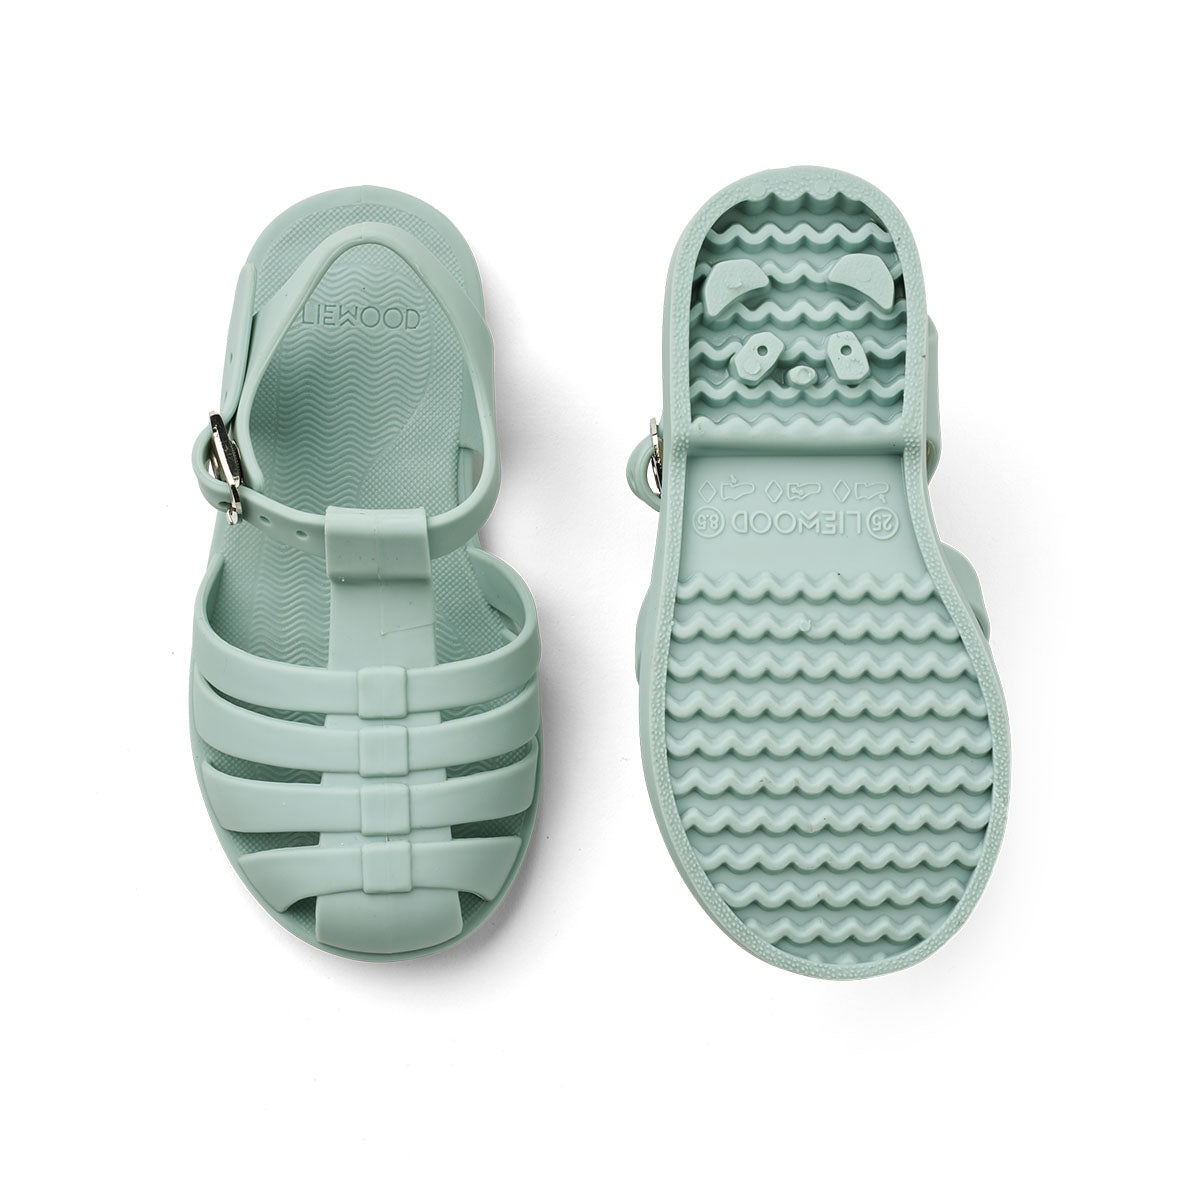 Ben je op zoek naar praktische én hippe waterschoenen? Dan zijn deze bre sandalen van Liewood in de kleur ice blue een goede keus! Dankzij het flexibele materiaal en de verstelbare bandjes zijn deze lichtblauwe waterschoentjes perfect voor op het strand of aan het water en heel comfortabel voor je kind. VanZus